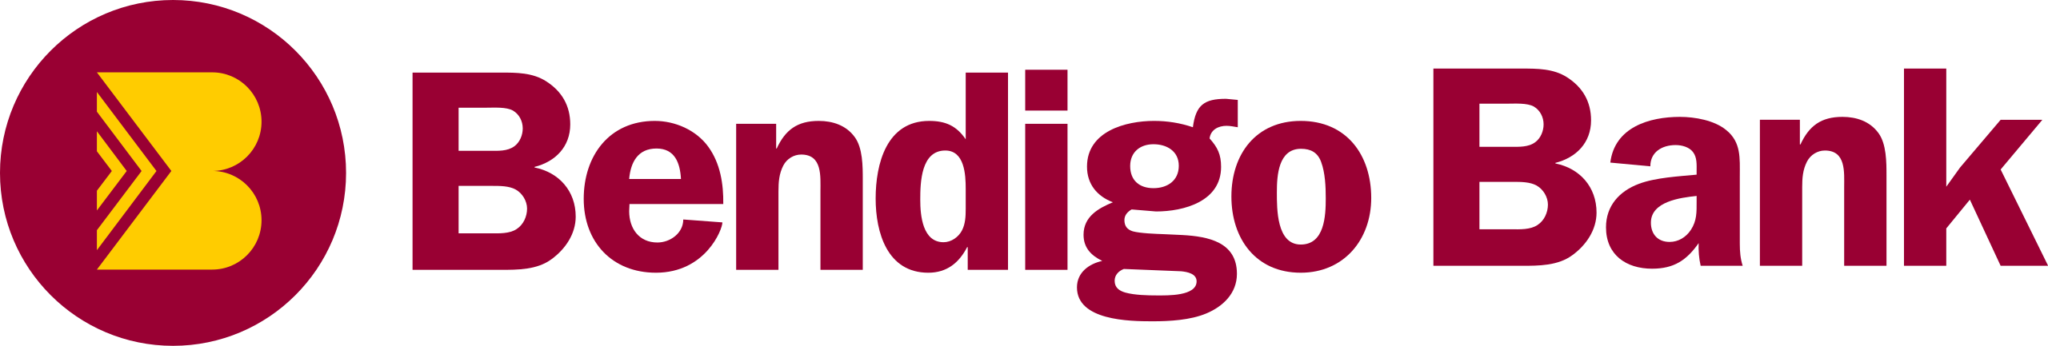 Bendigo_Bank_logo.svg-2048x346